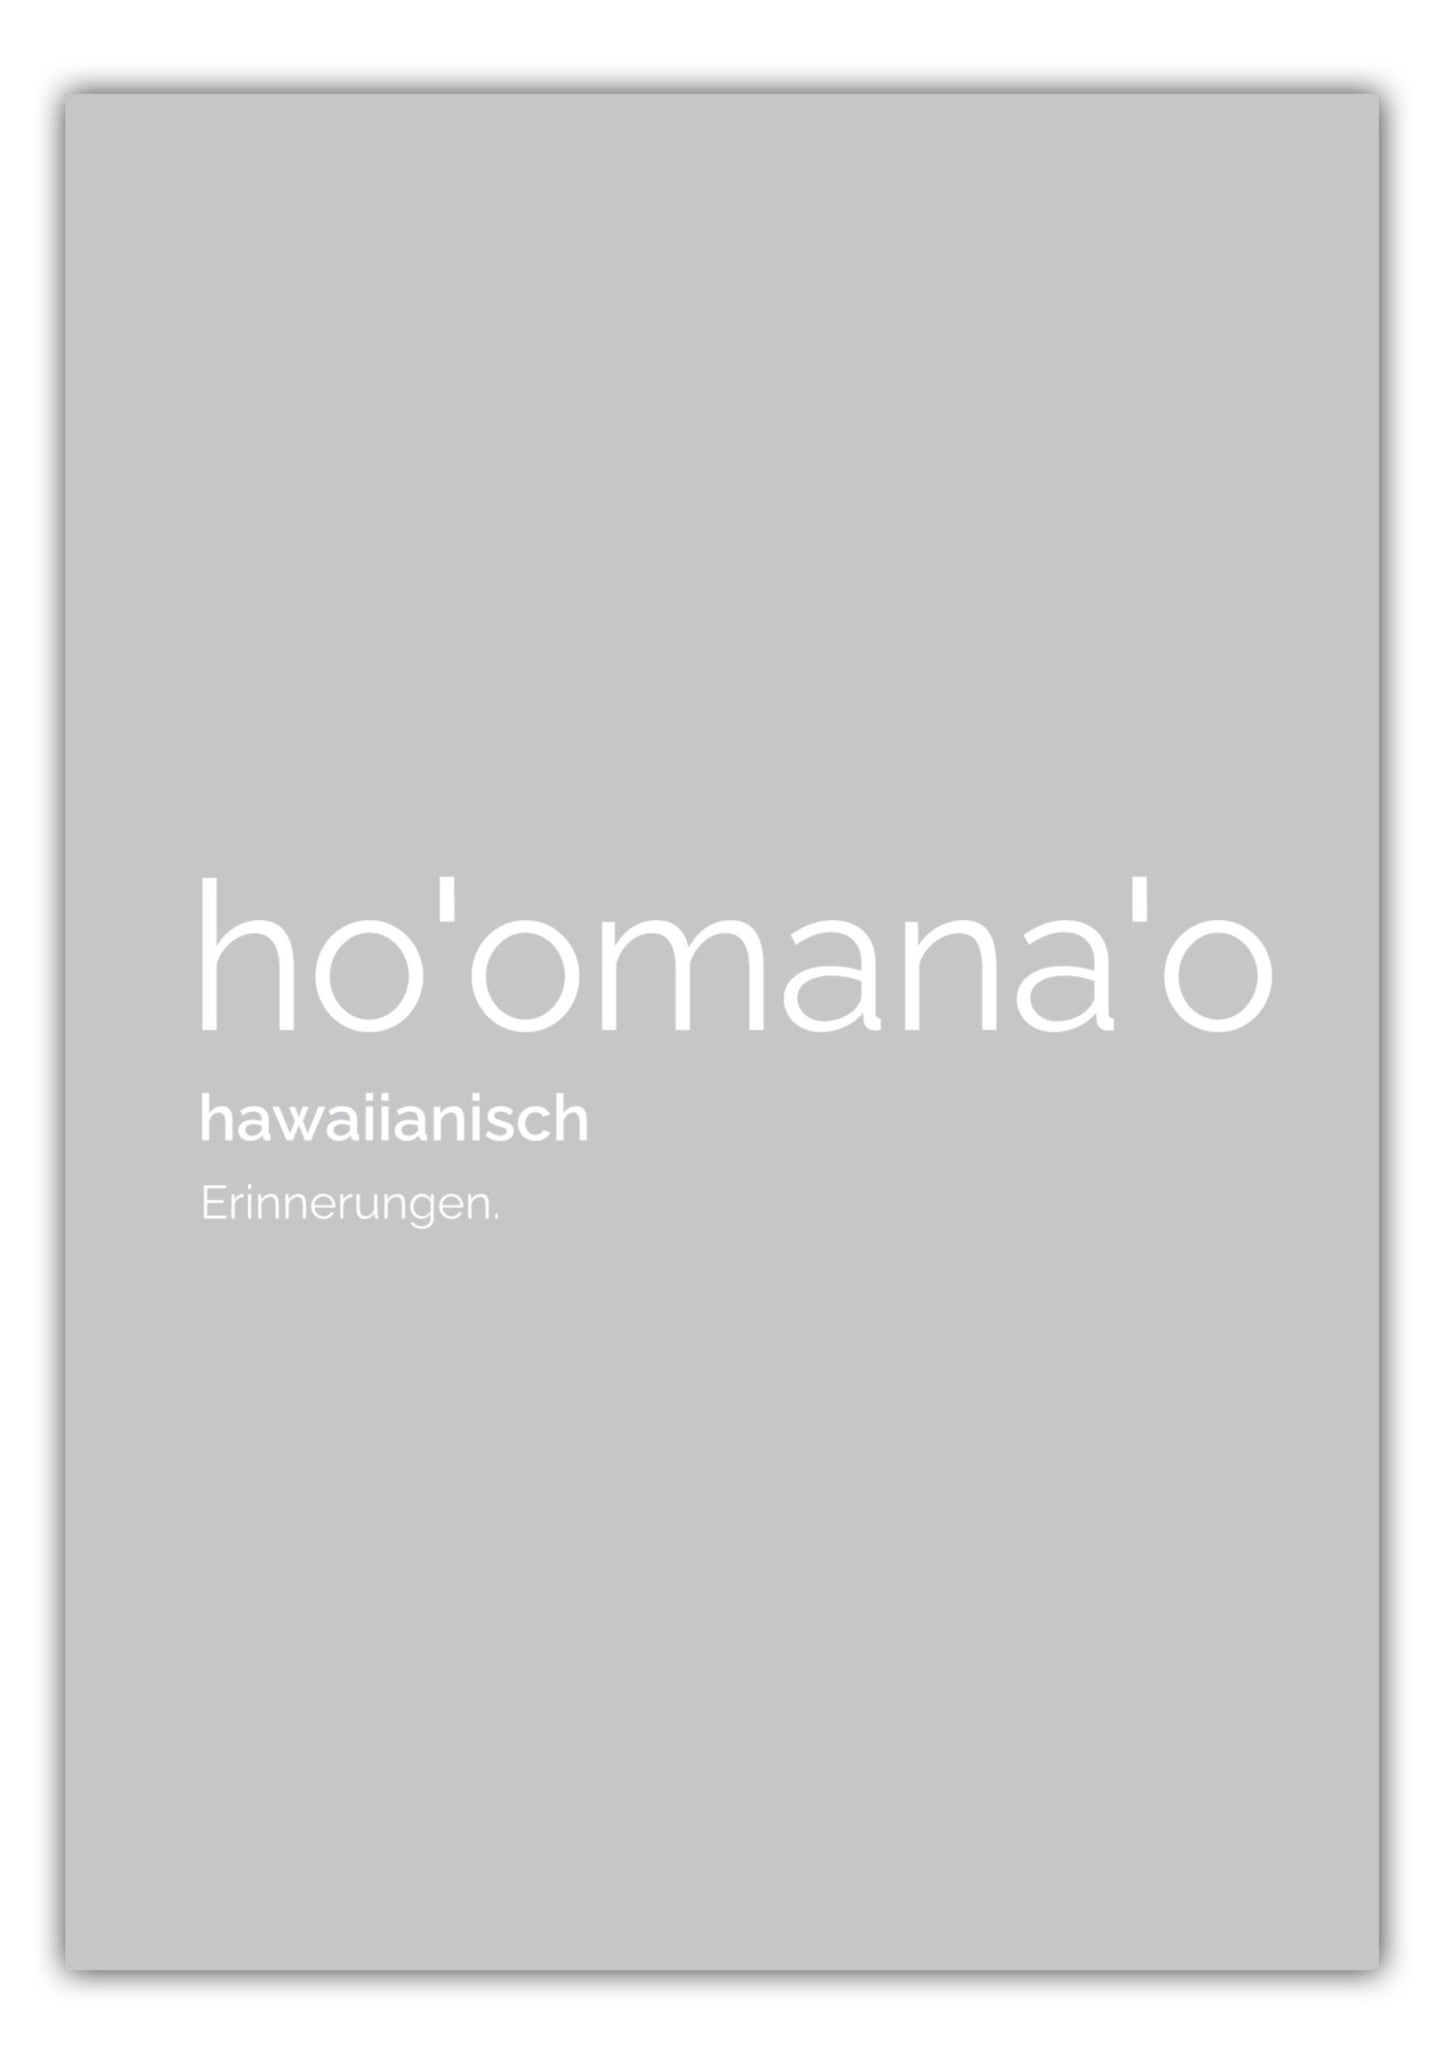 Poster Hoomanao (Hawaiianisch: Erinnerungen)